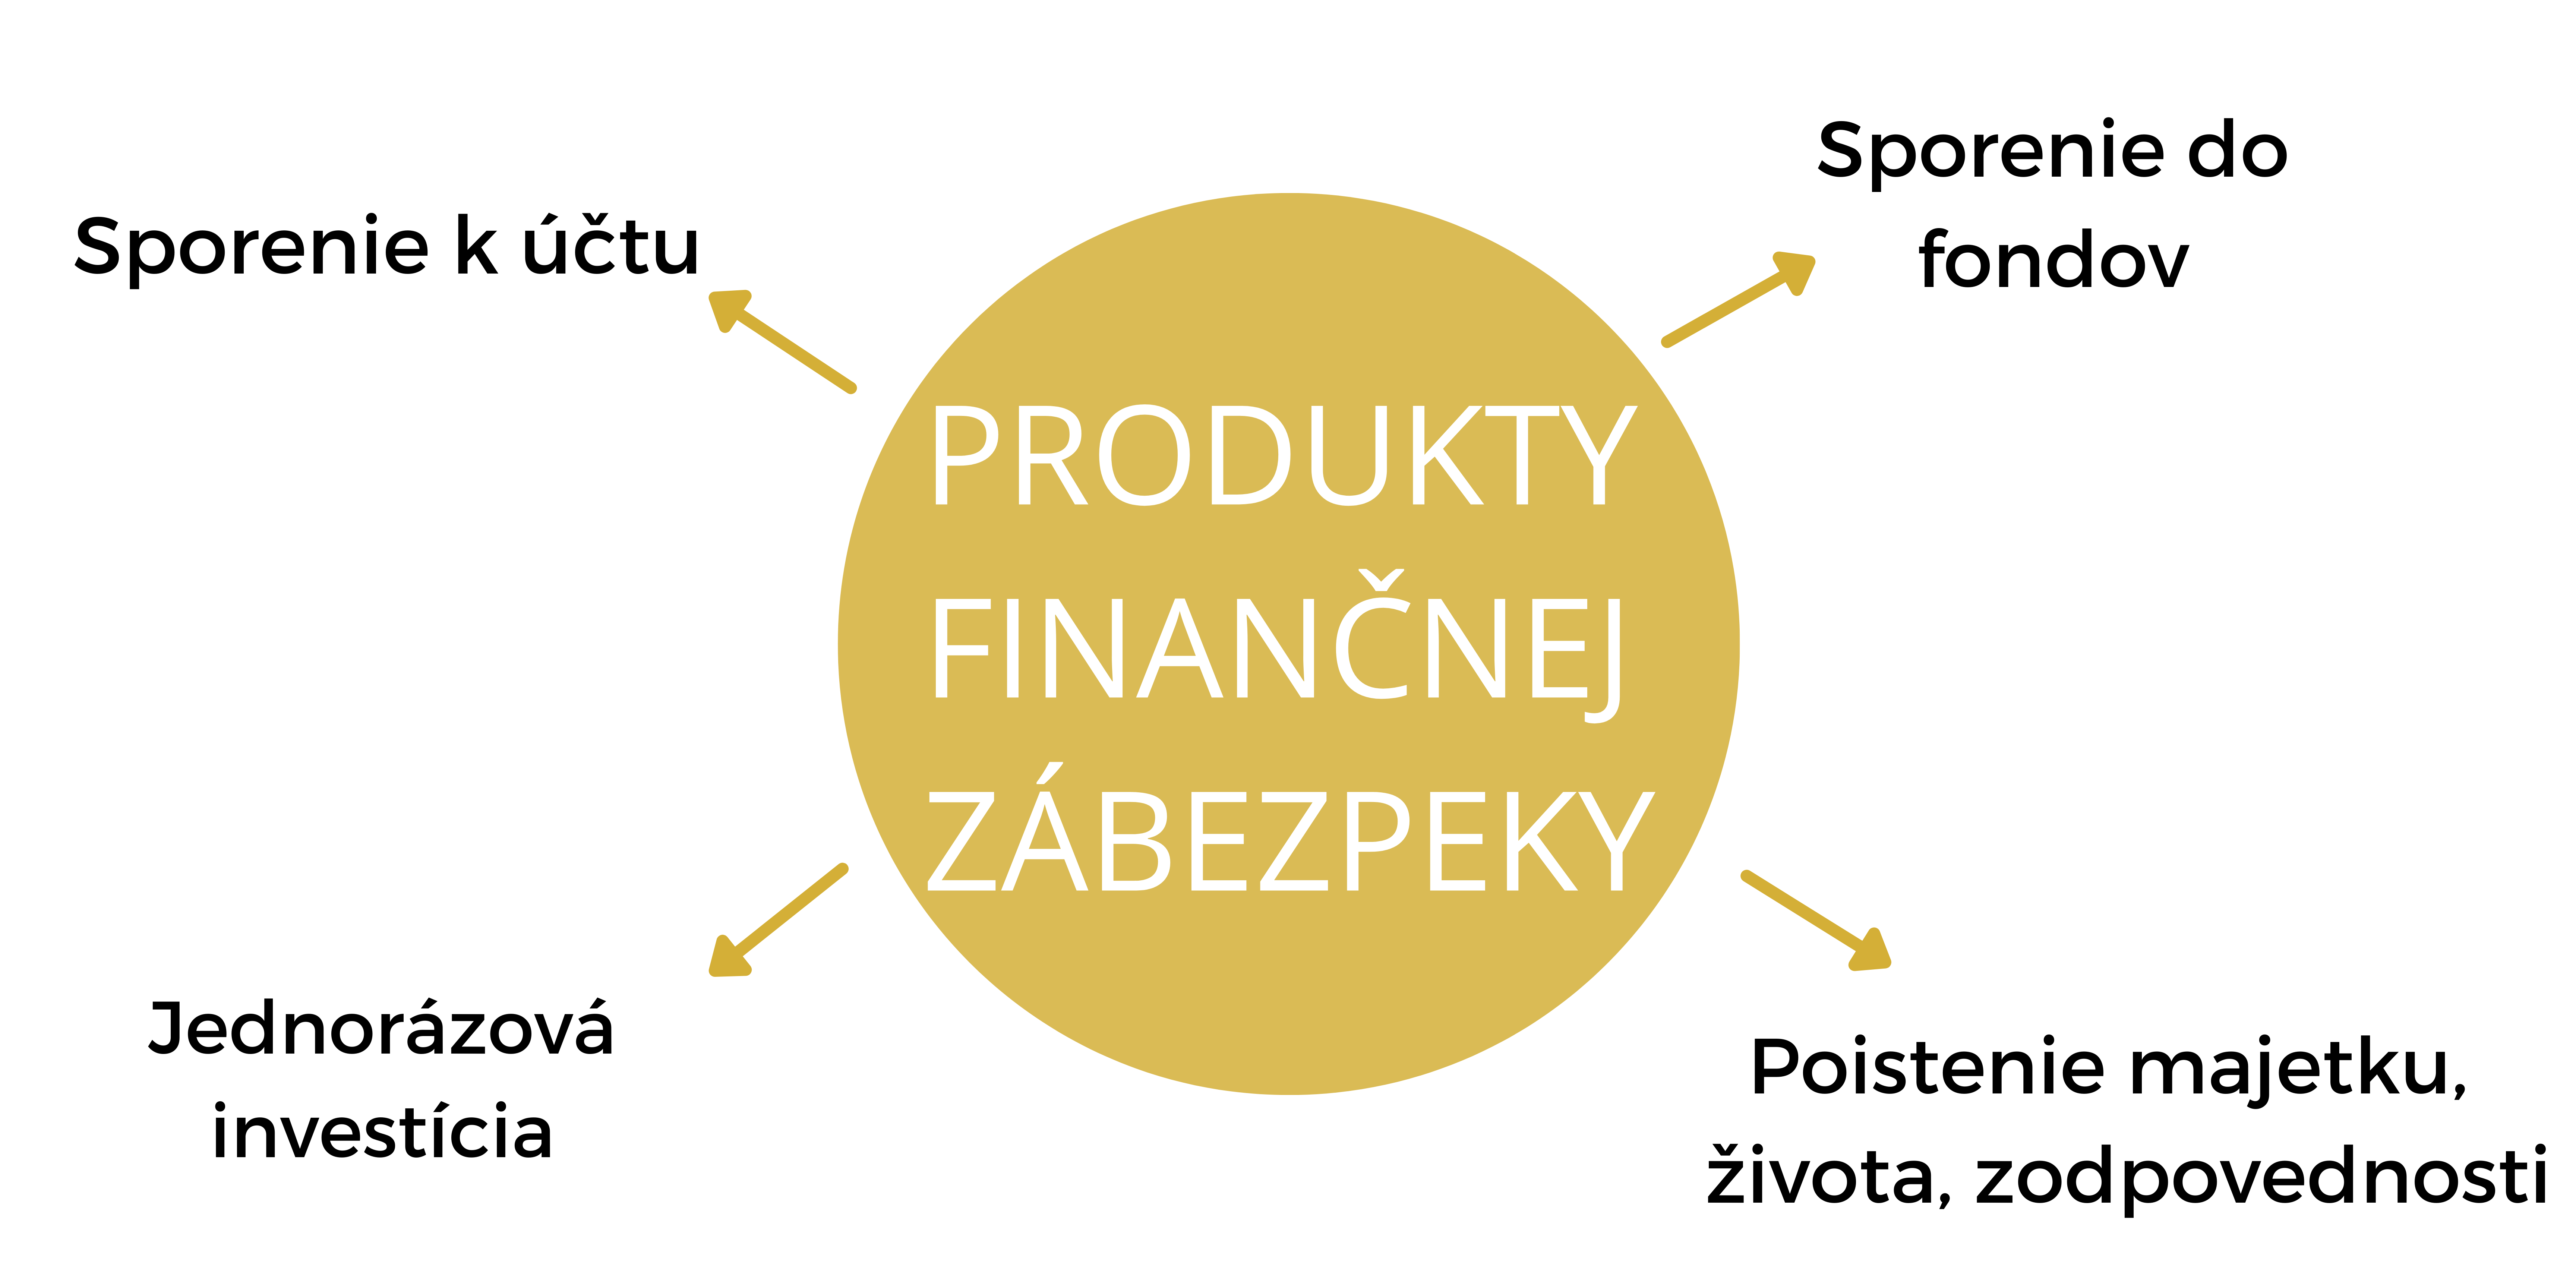 Tatiana Krčmáriková - Finančné zdravie a finančný poradca - Produkty finančnej zábezpeky